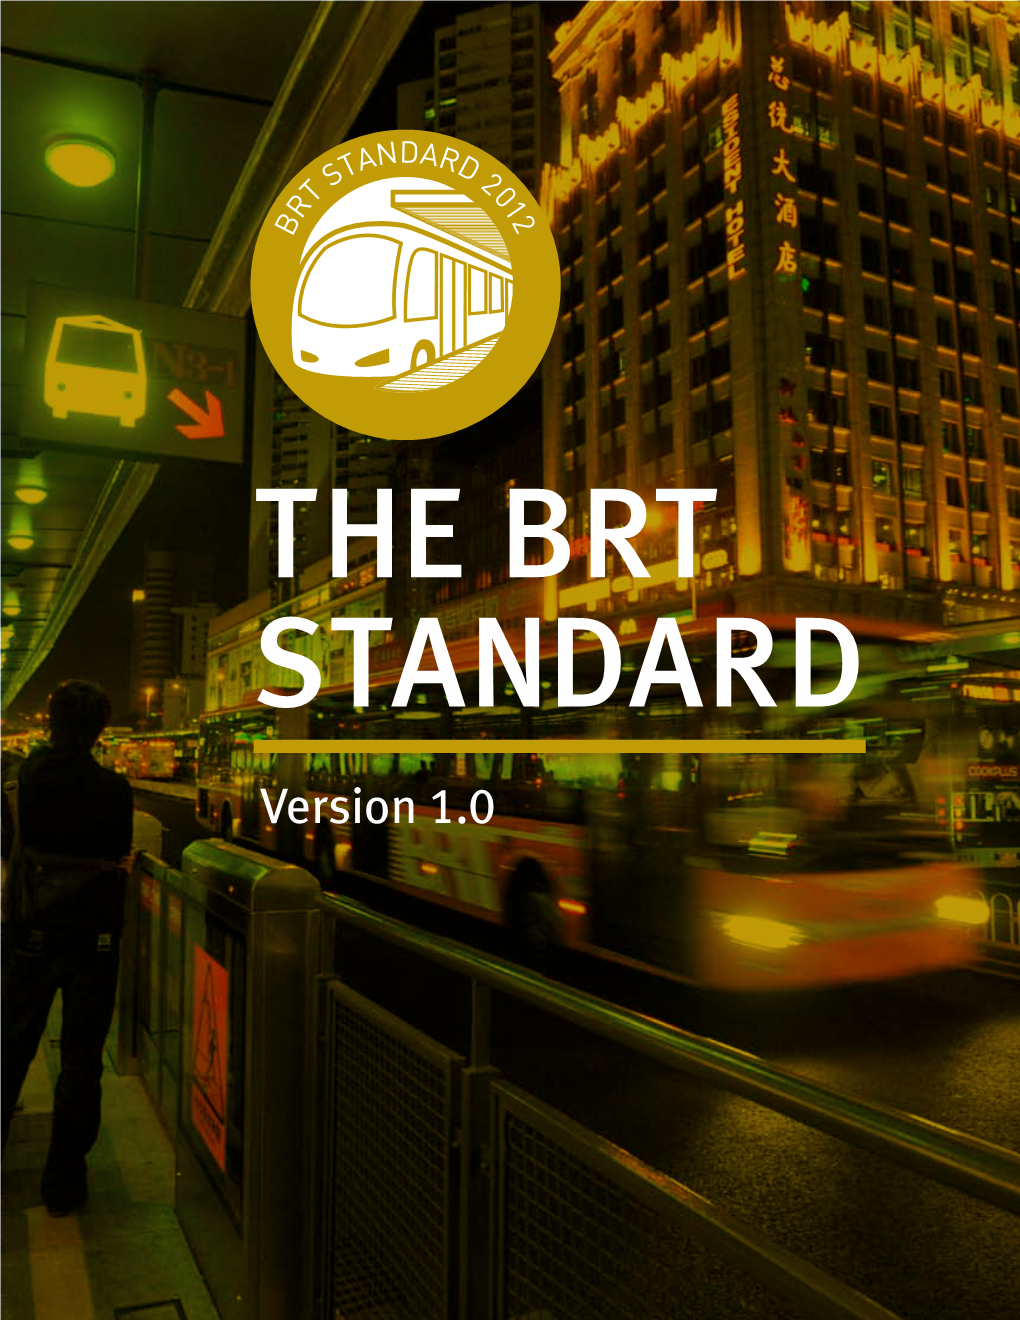 The Brt Standard Version 1.0 the BRT Standard Version 1.0